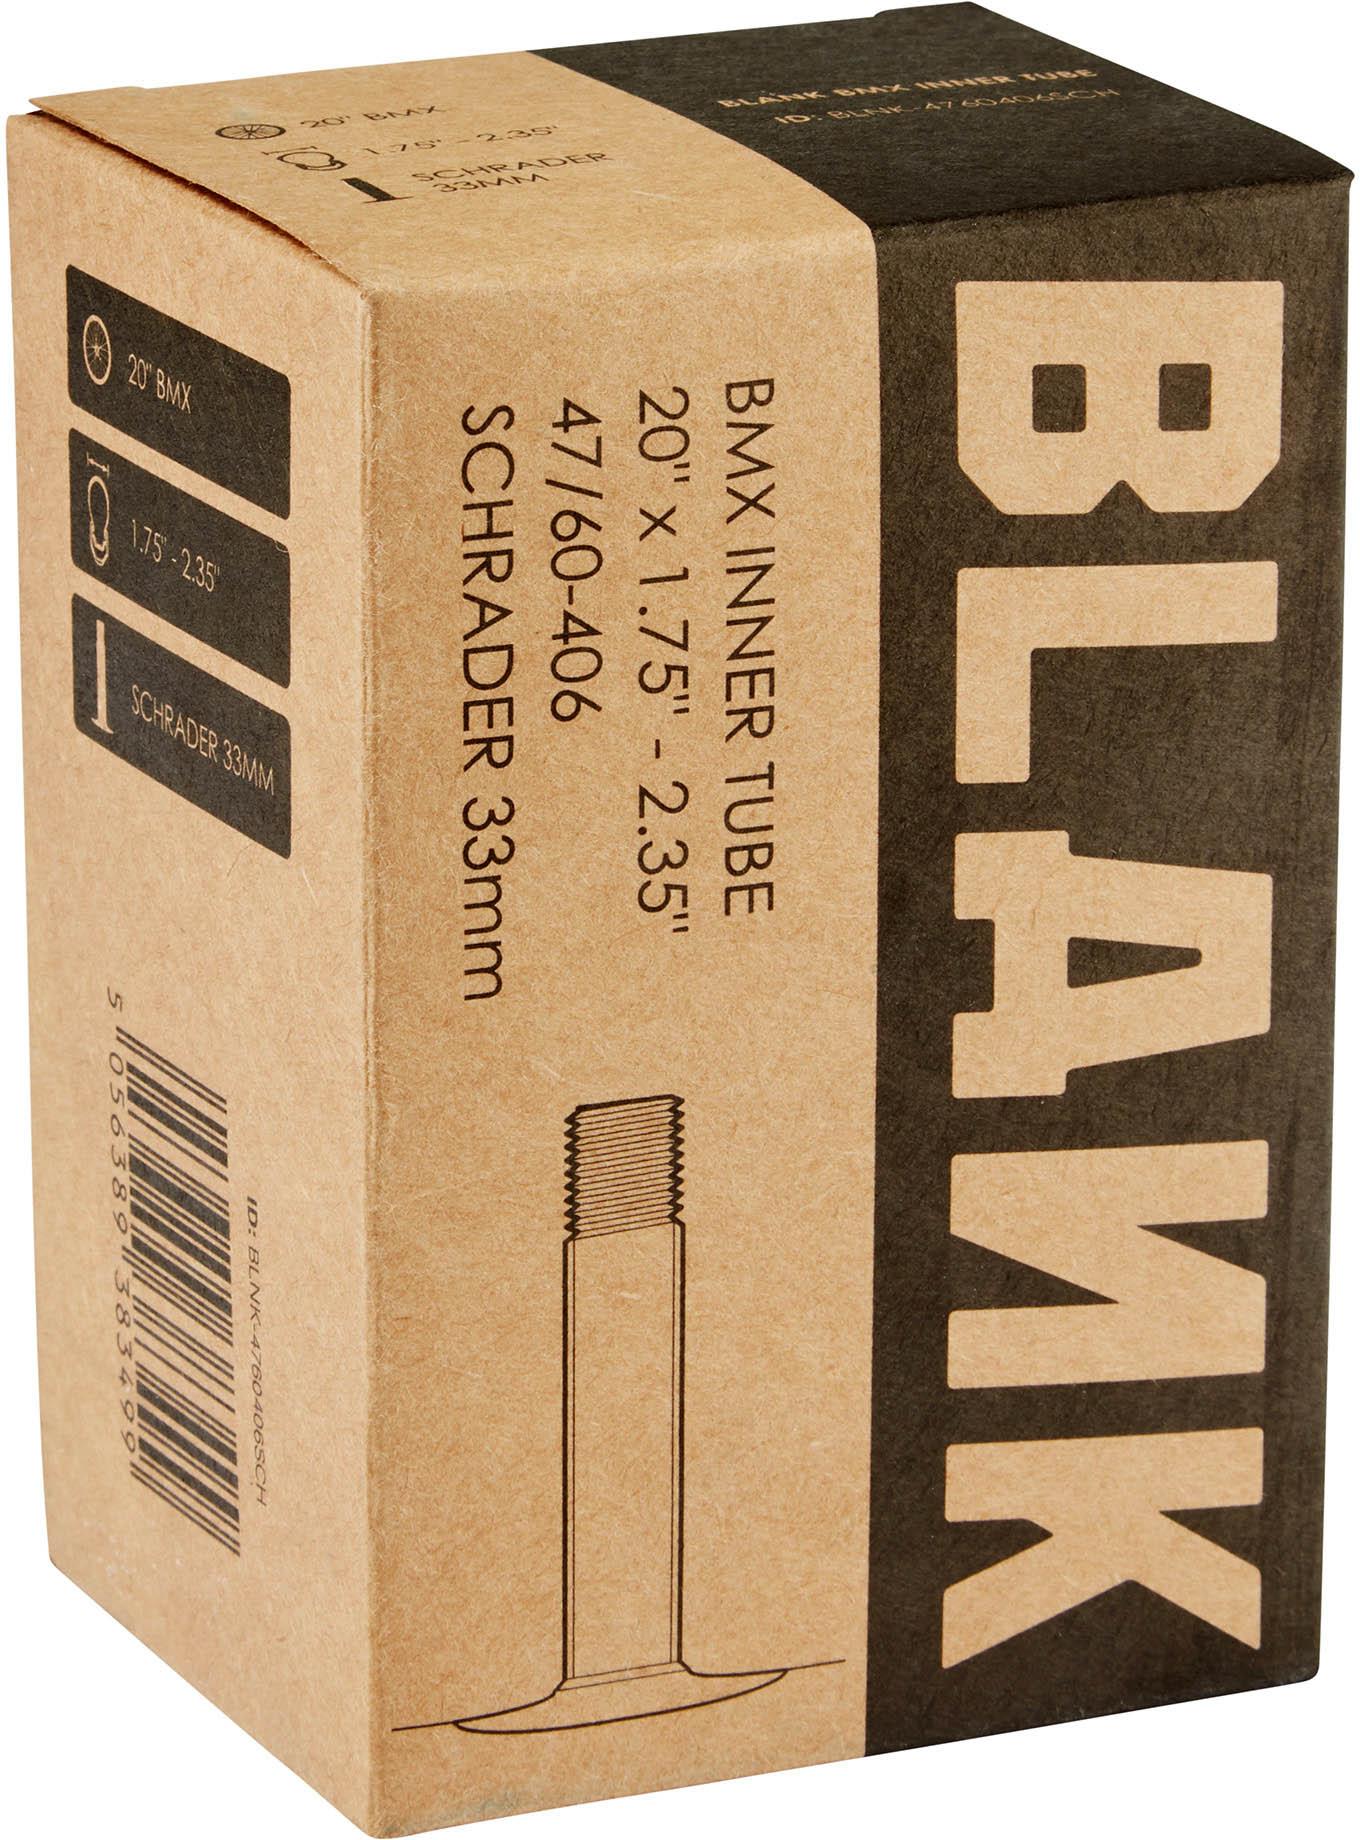 Blank 20 Bmx Inner Tube - Black